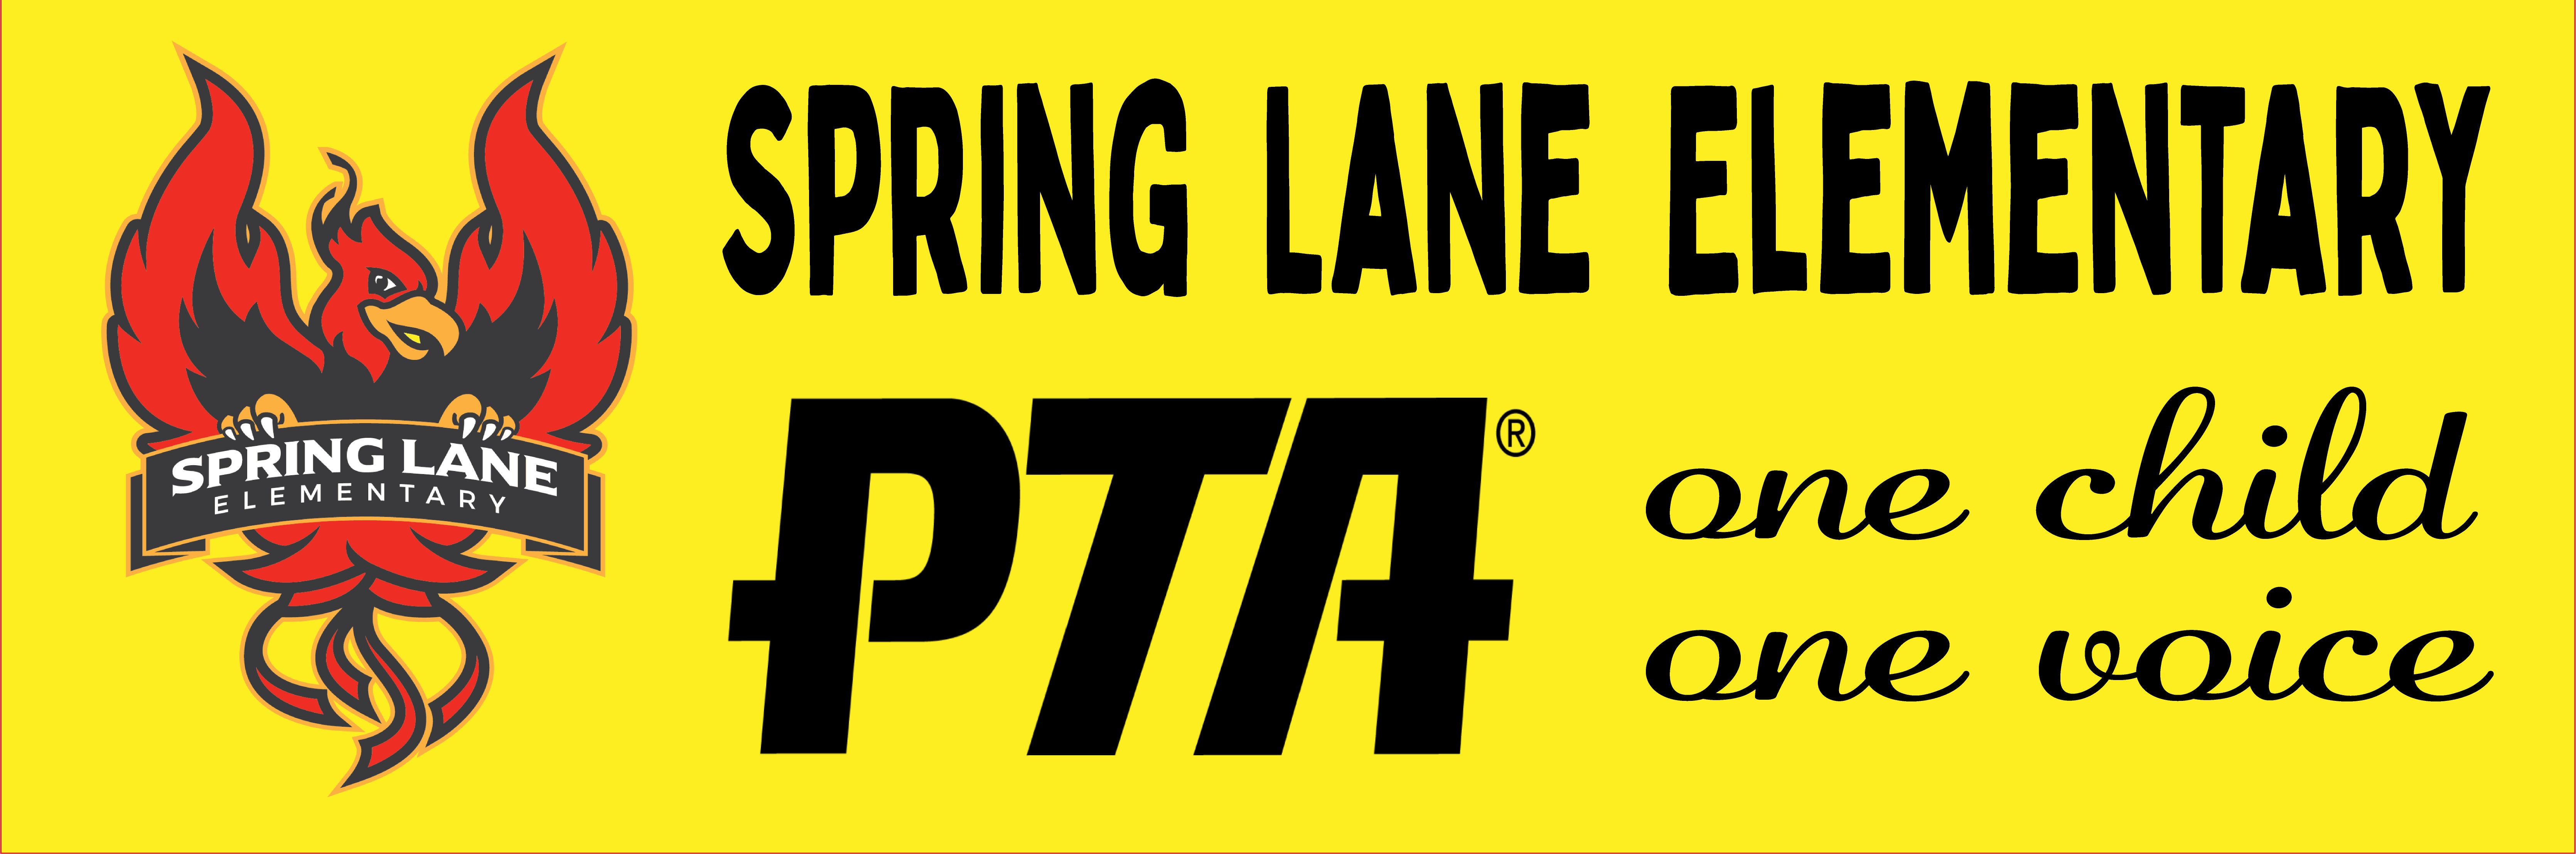 Spring Lane Elementary PTA MEMBERSHIP Cheddar Up